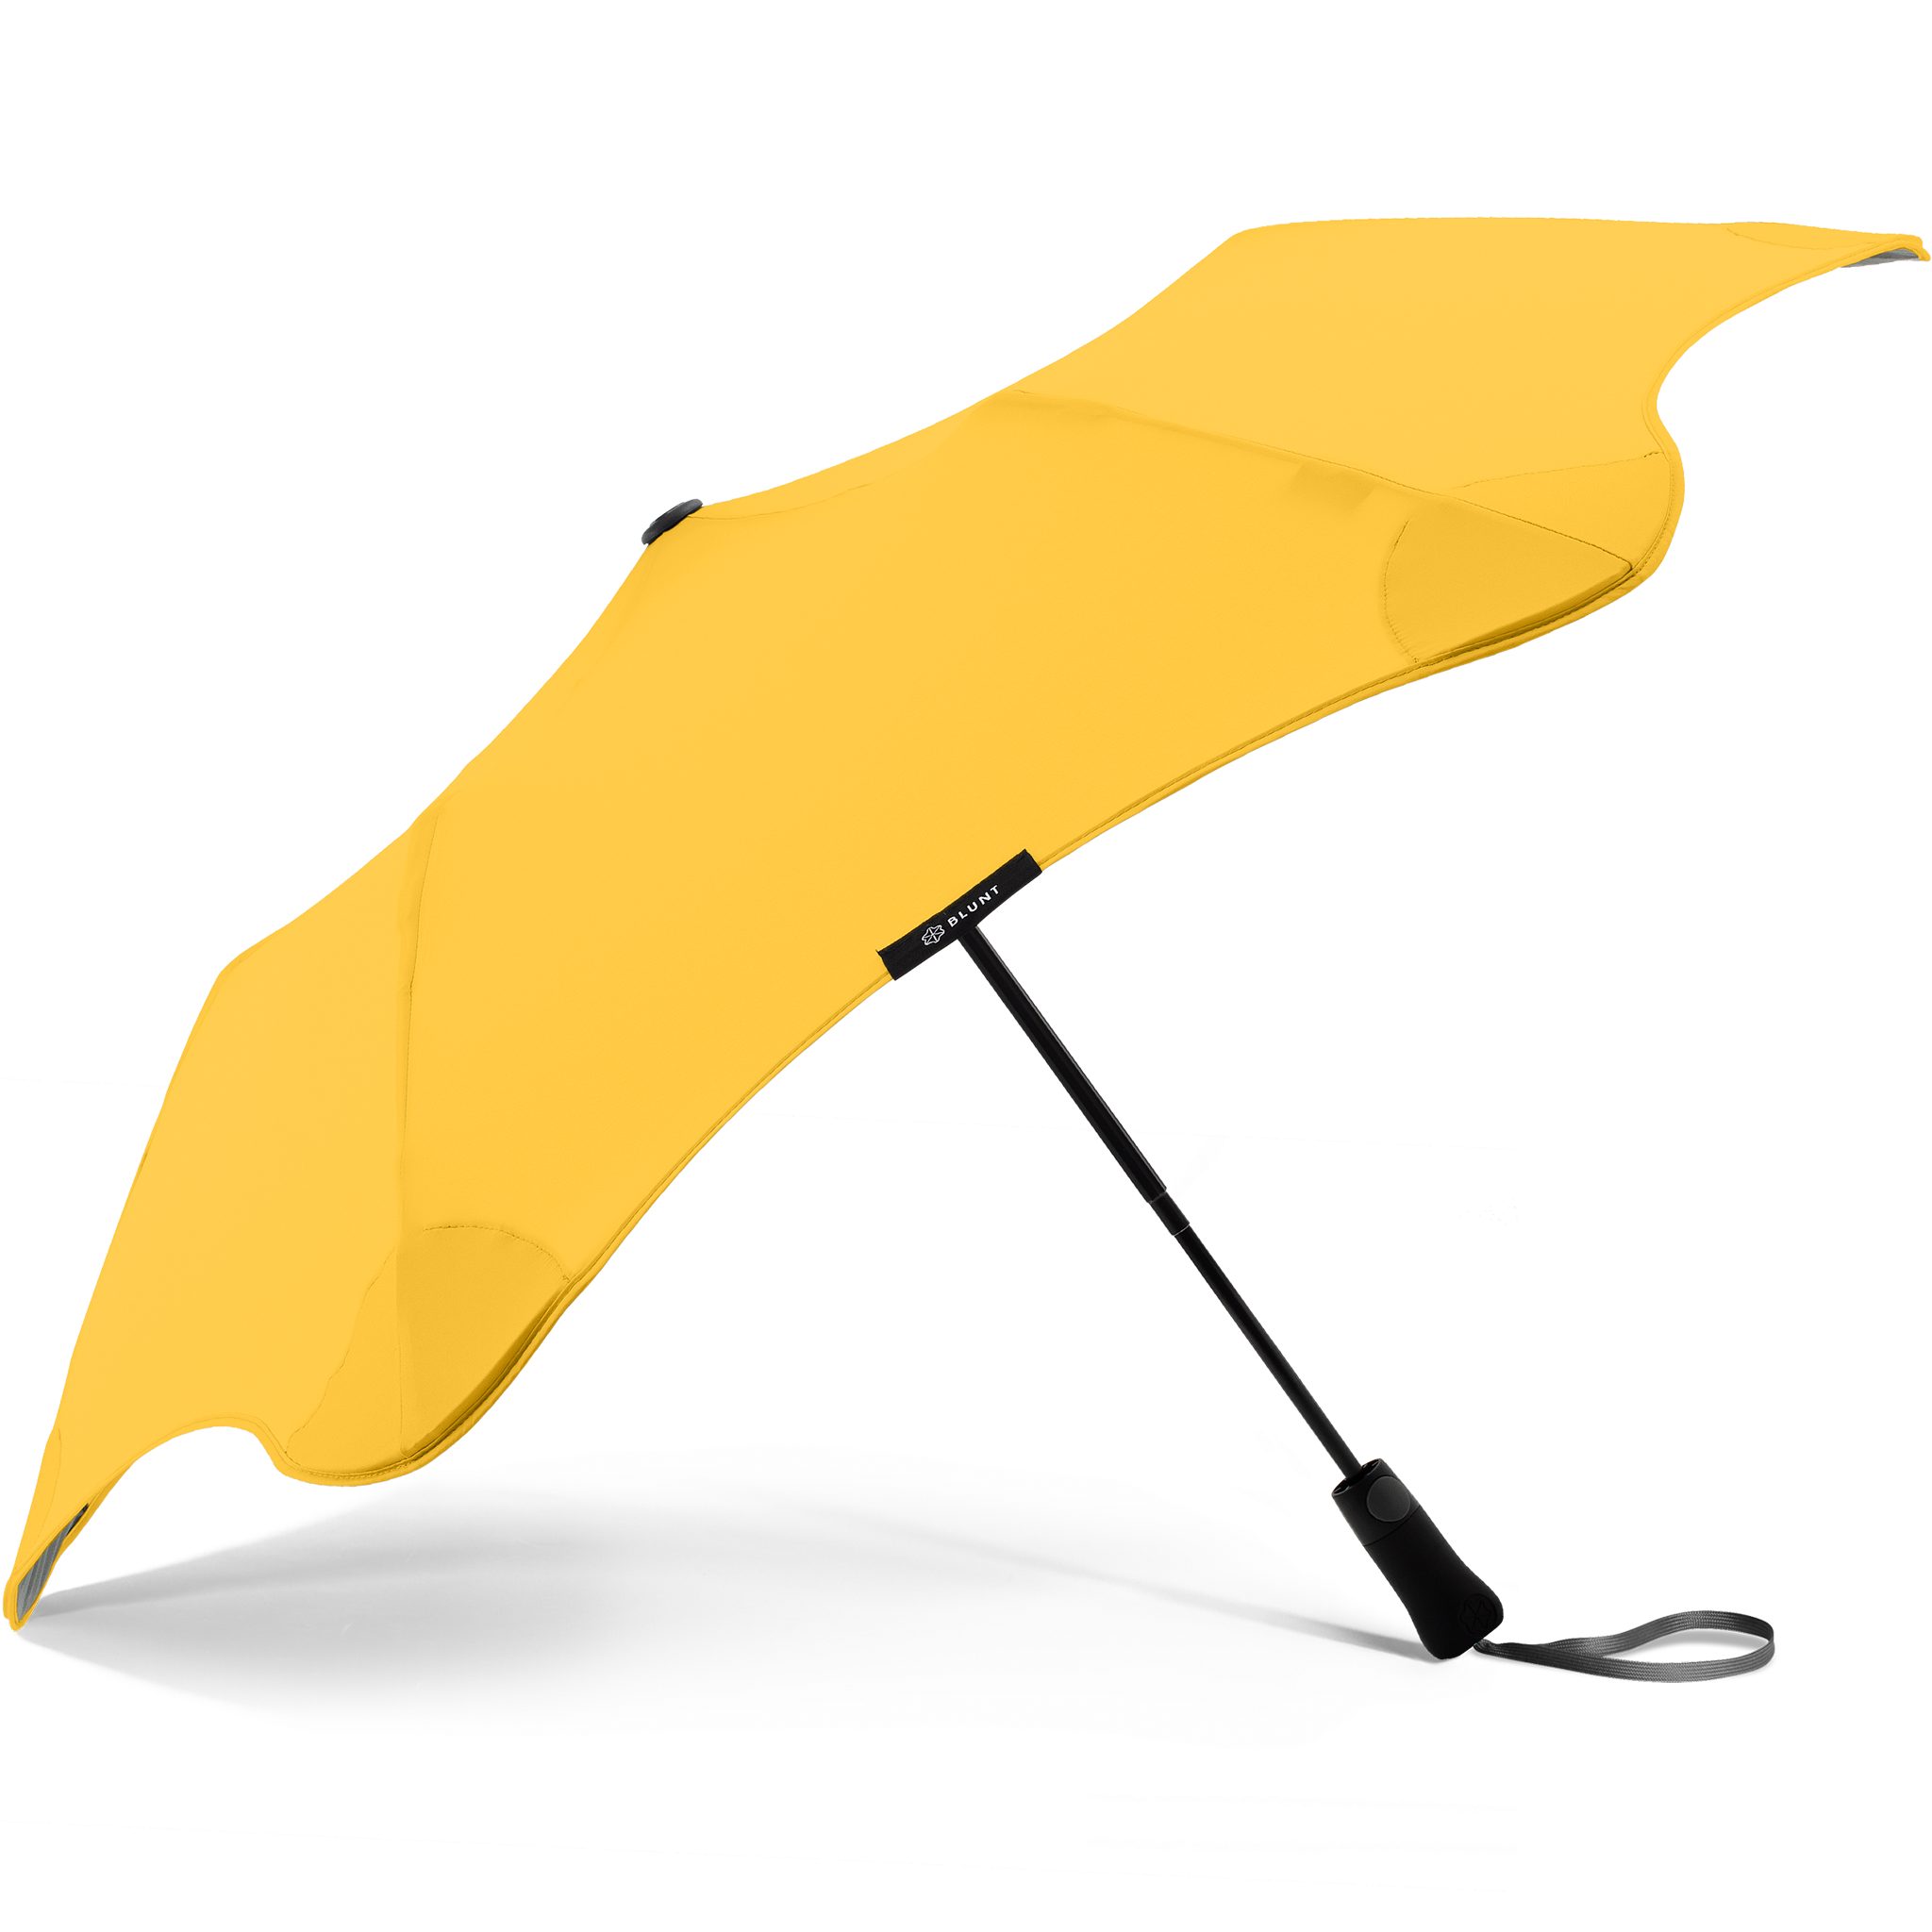 Blunt Taschenregenschirm Metro, herausragende Technologie, Silhouette einzigartige gelb patentierte